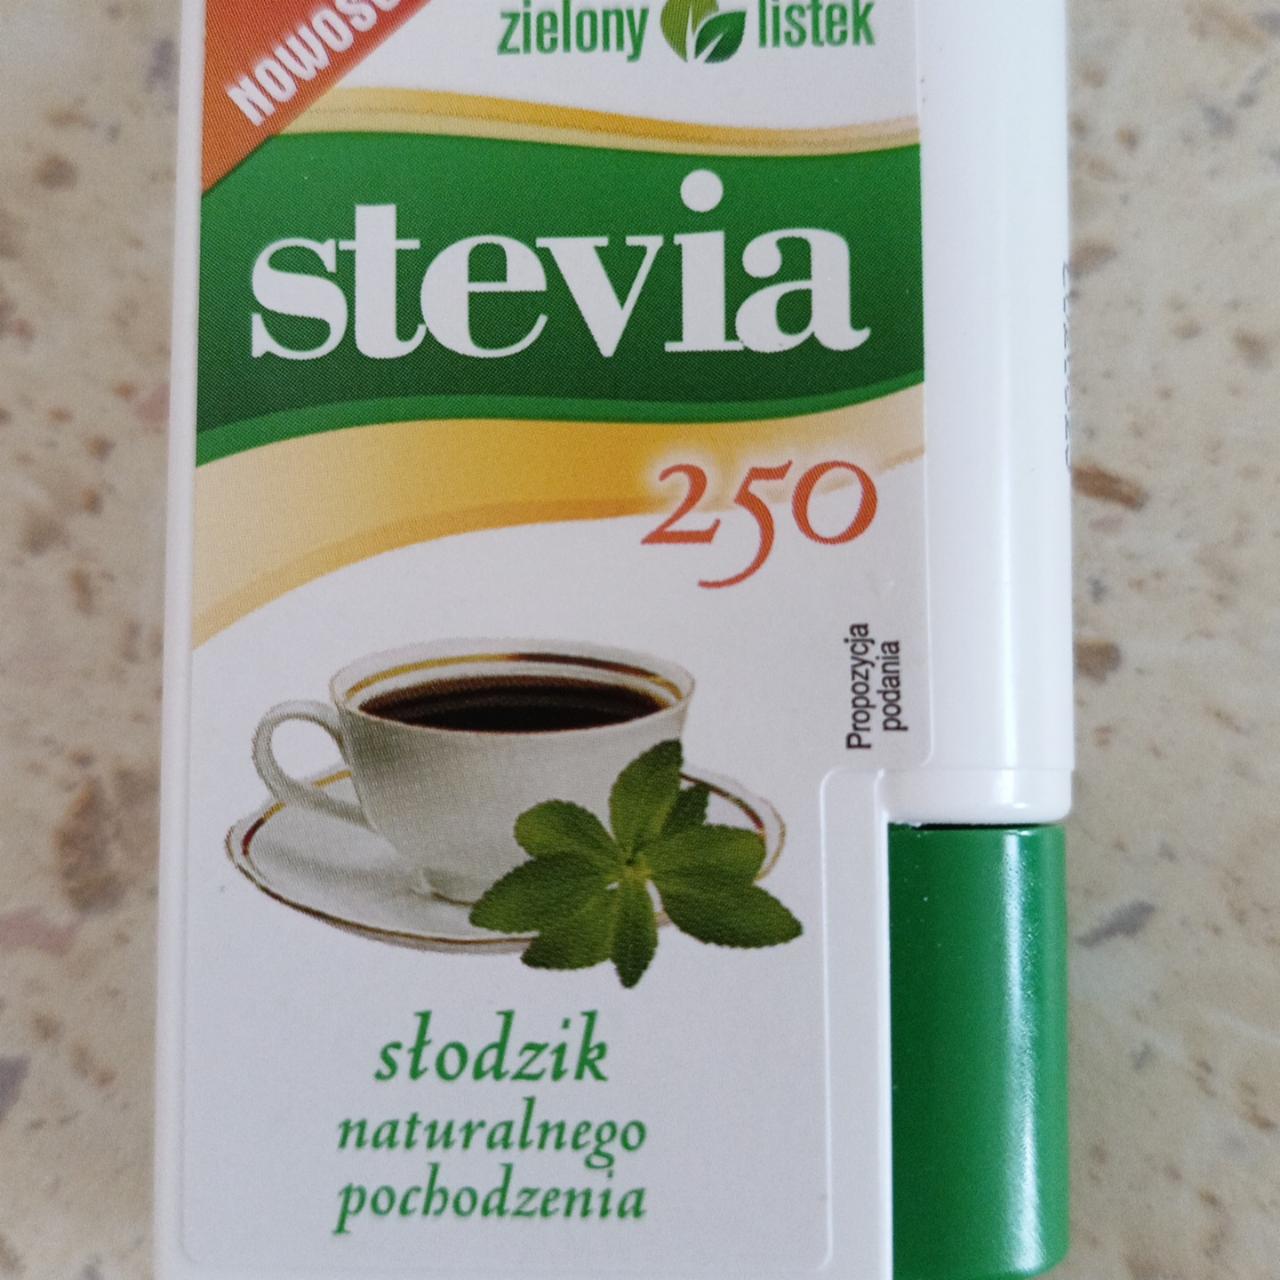 Zdjęcia - Zielony listek Stevia Słodzik naturalnego pochodzenia 13,8 g (250 tabletek)